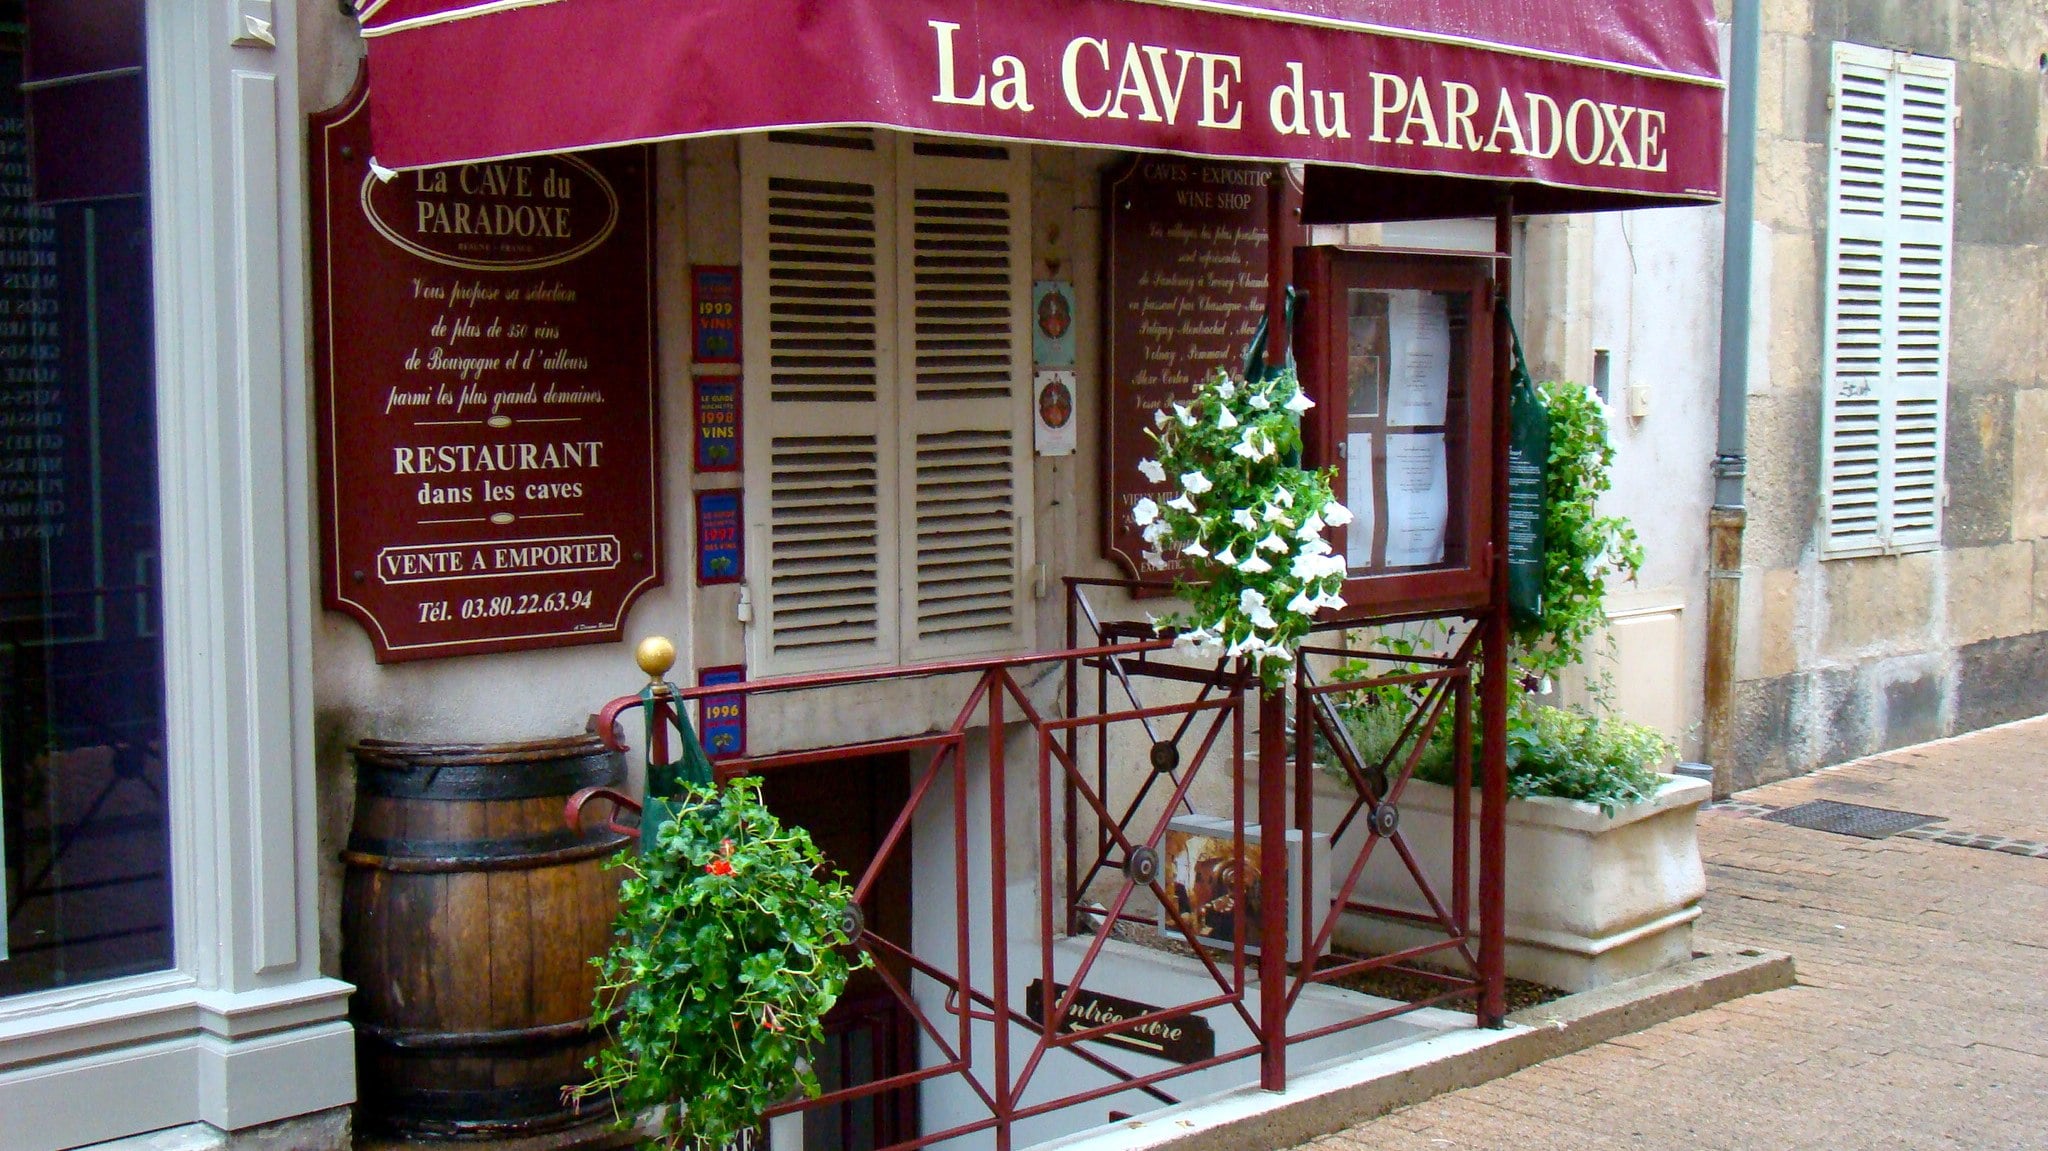 Beaune, France; La Cave du Paradoxe.